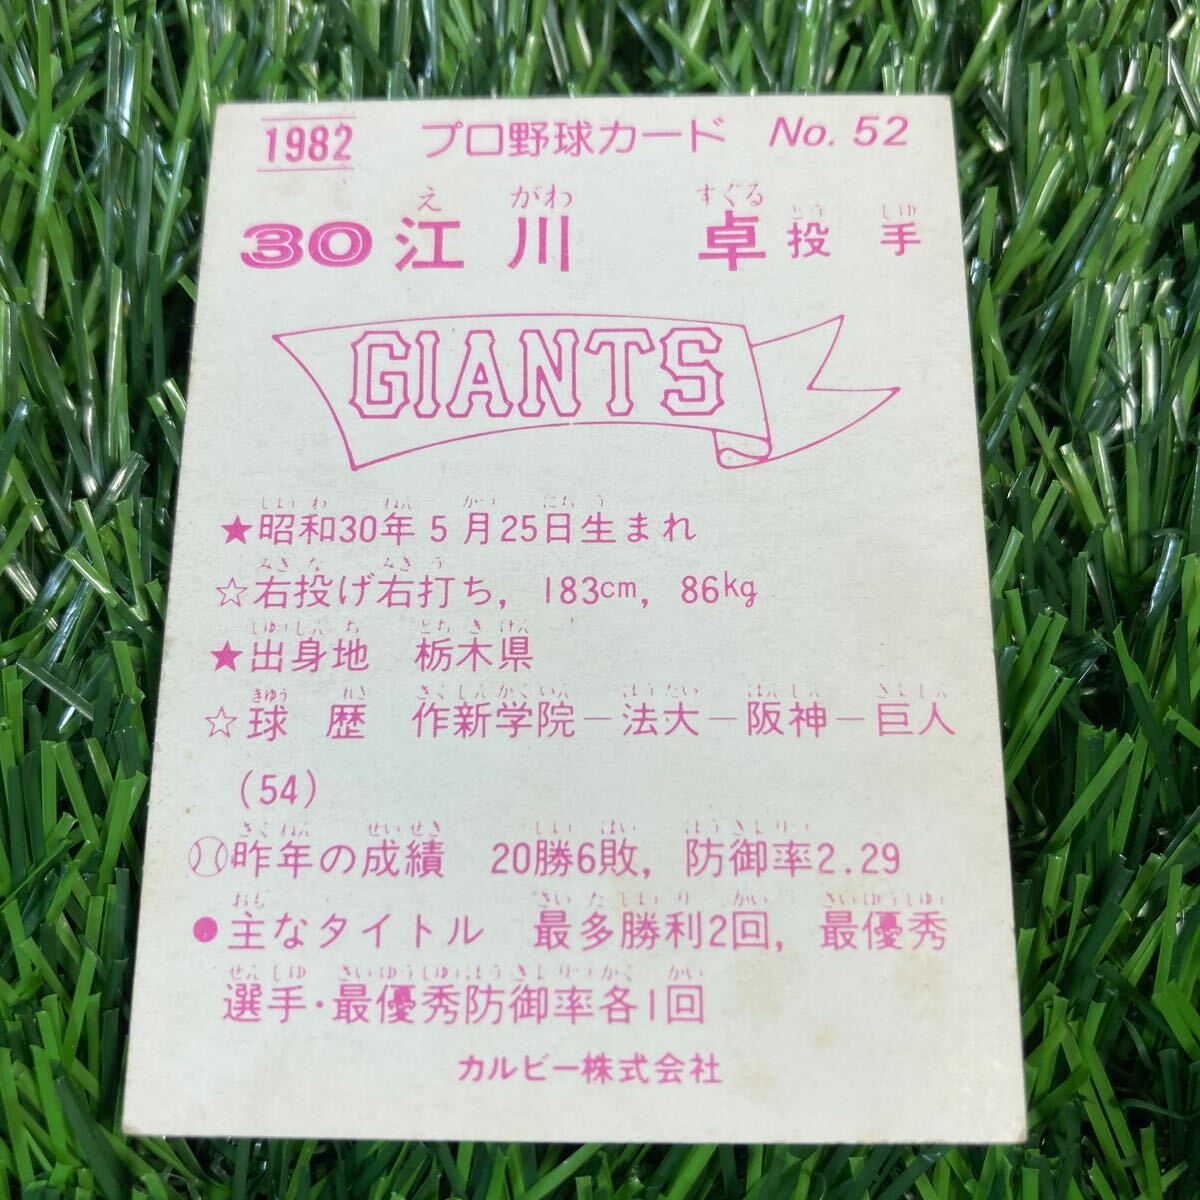 1982年 読売 江川 No.52 カルビー プロ野球カードの画像2